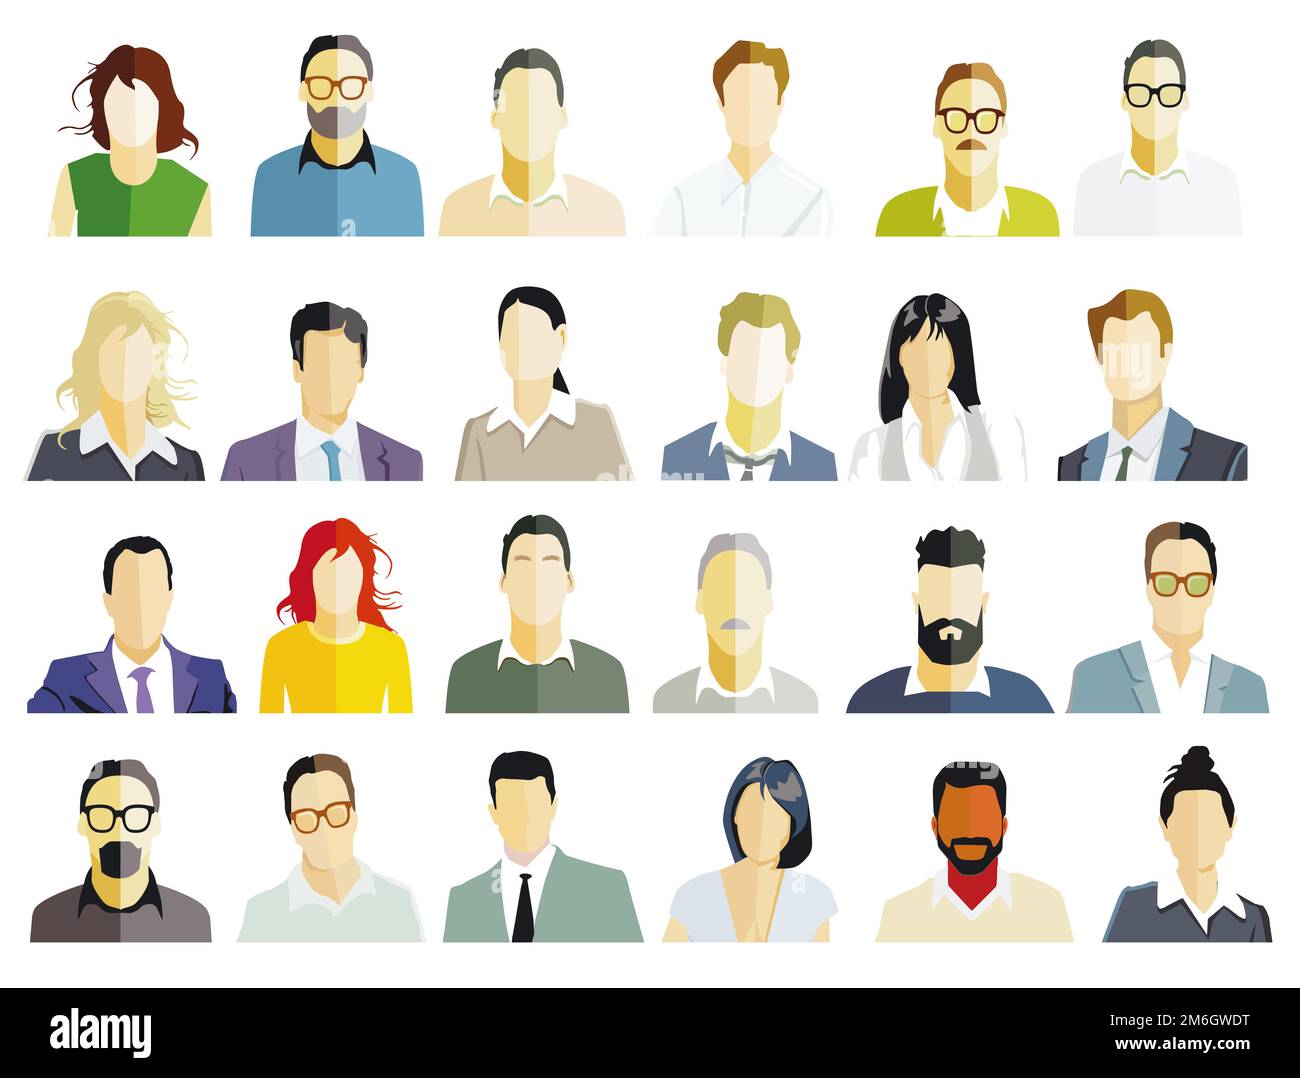 Portrait de groupe de personnes, visages sur fond blanc. Illustration Banque D'Images